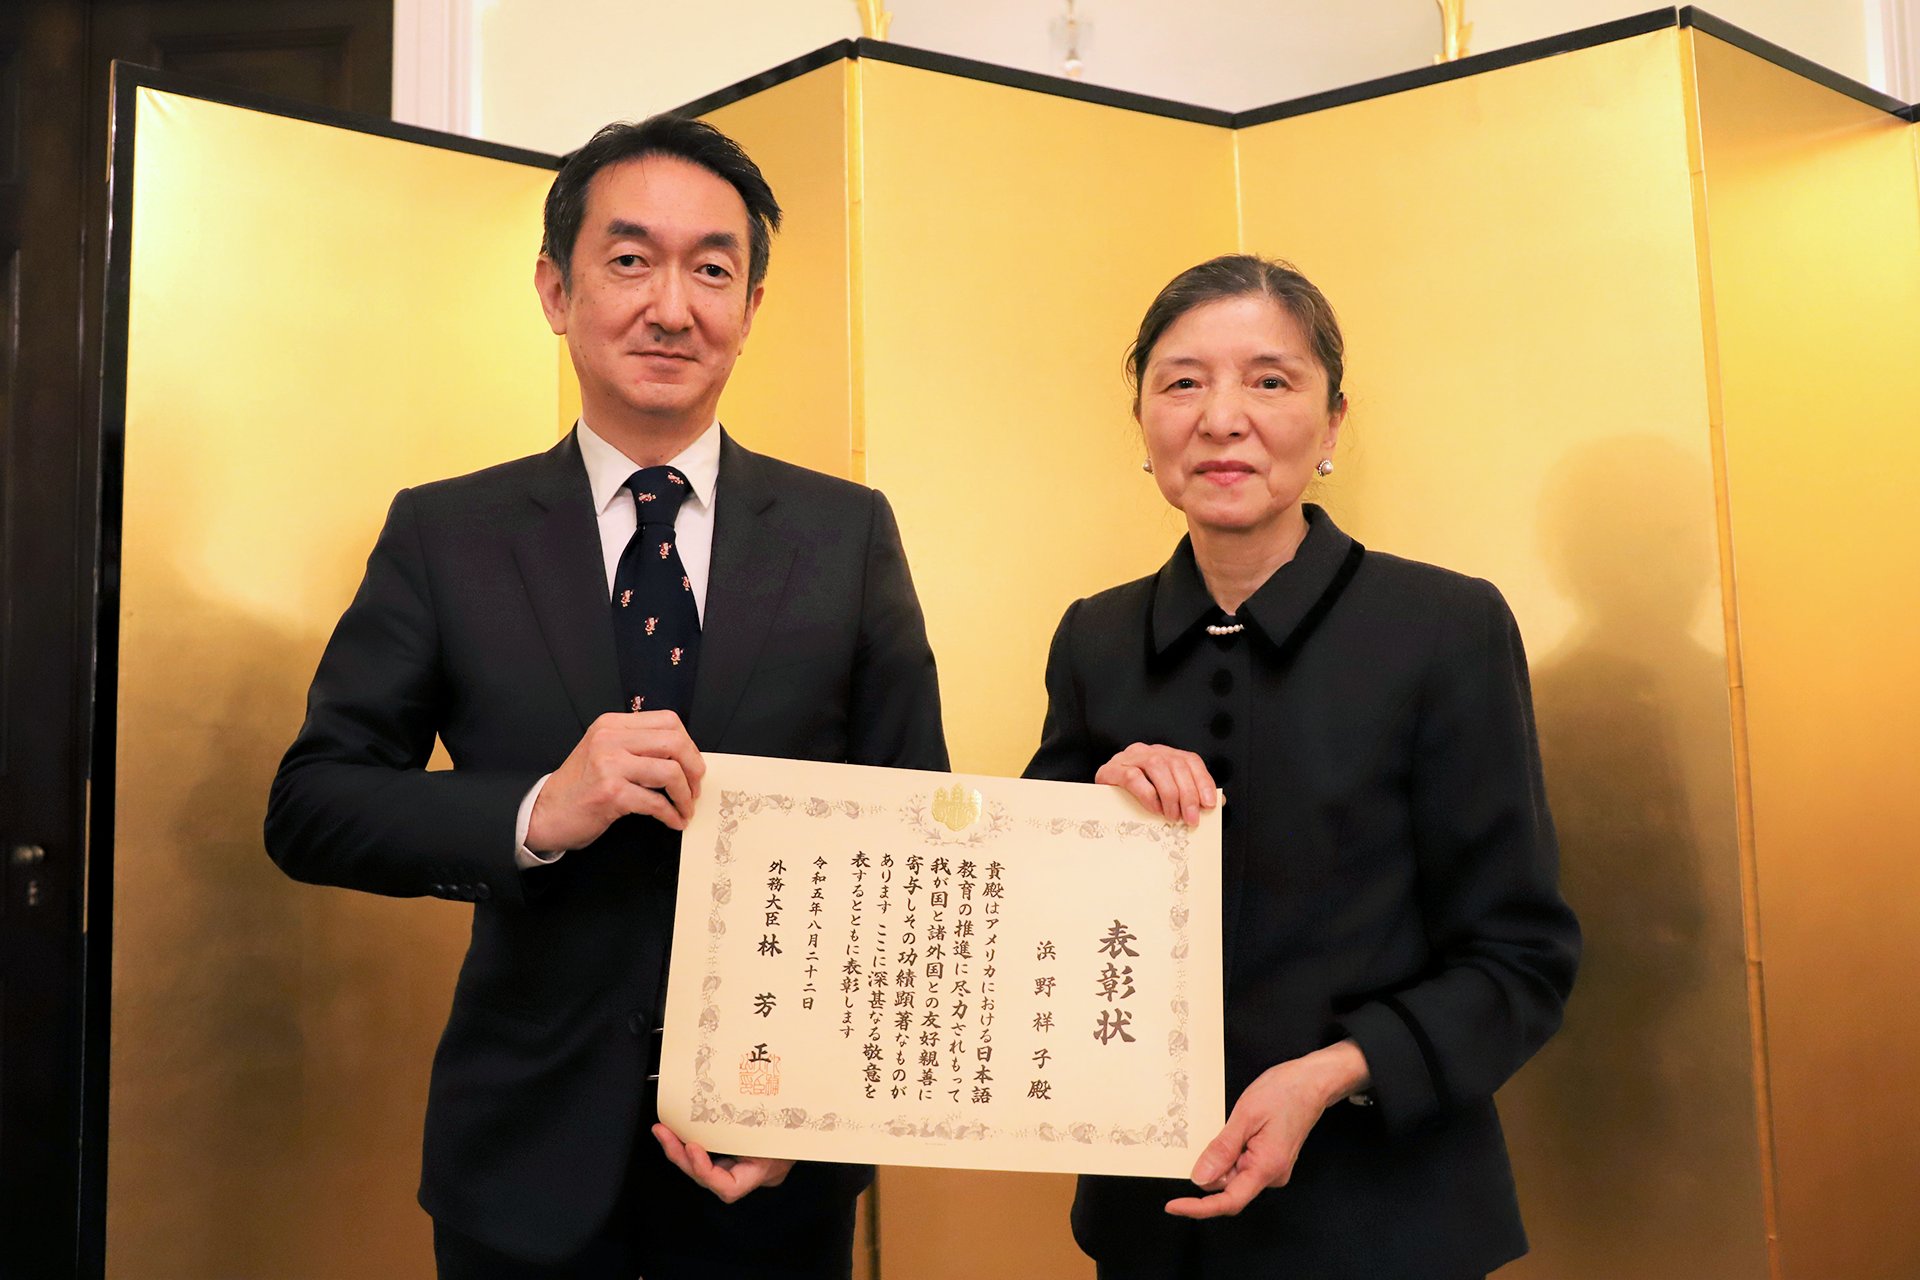 Professor Hamano Awarded